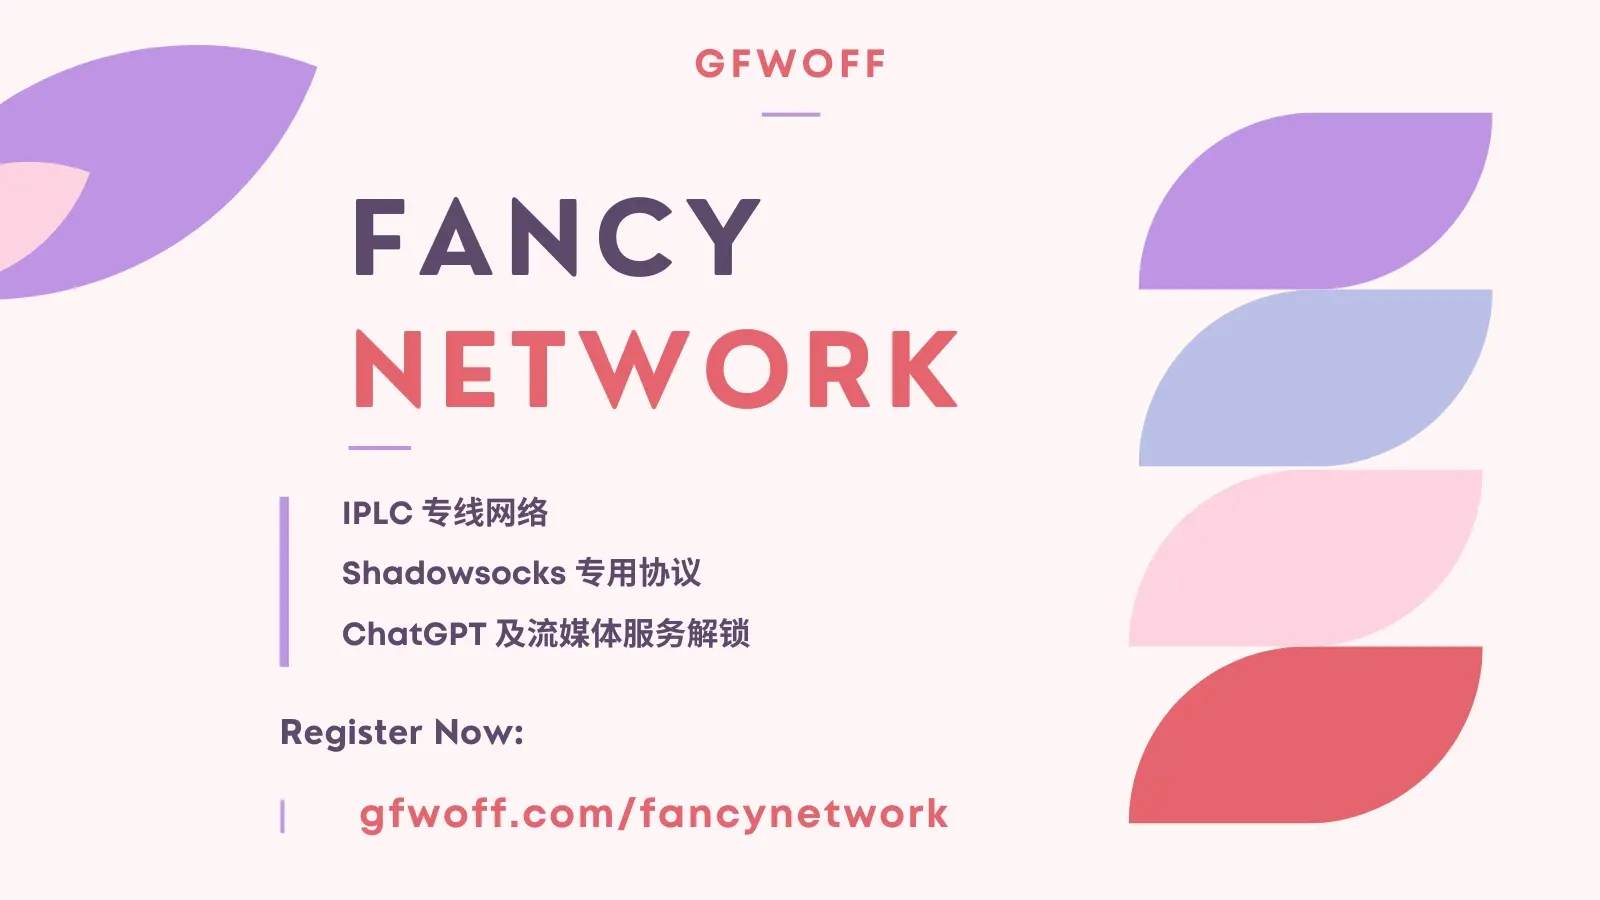 Fancy Network 机场官网 GFWOFF